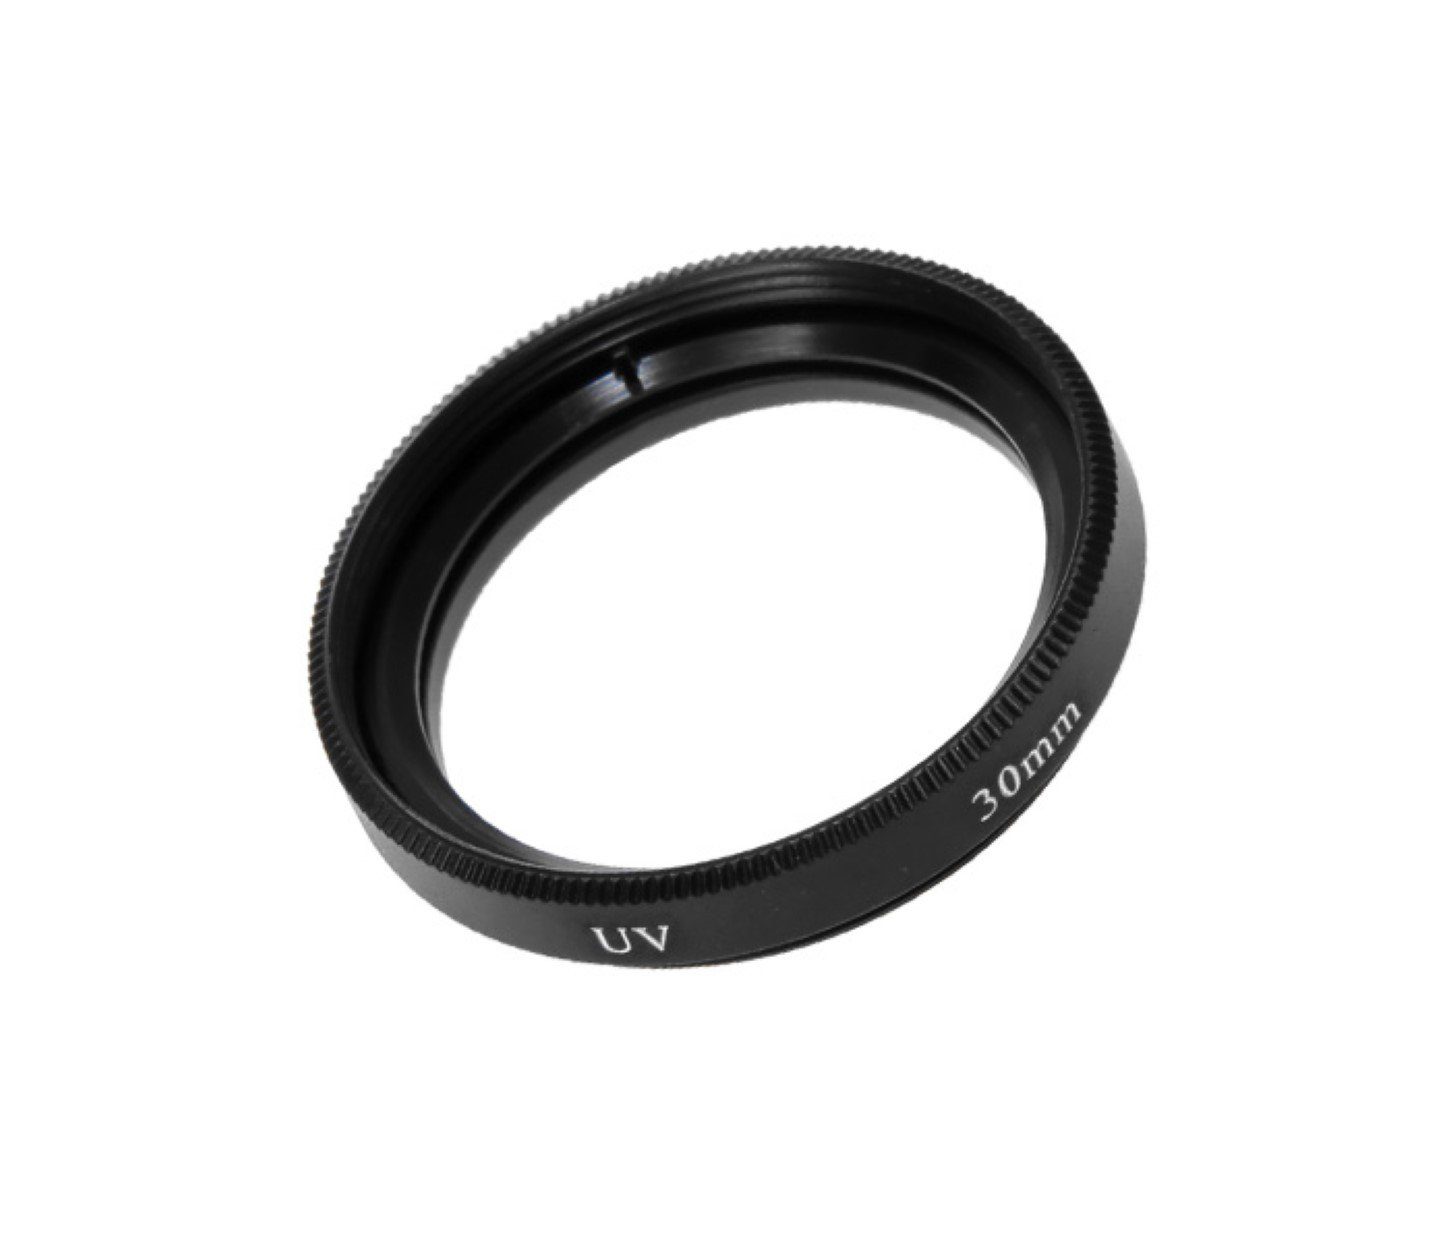 Gewinde Filter 30mm ayex für mit Schutzfilter MC Foto-UV-Filter Objektive UV